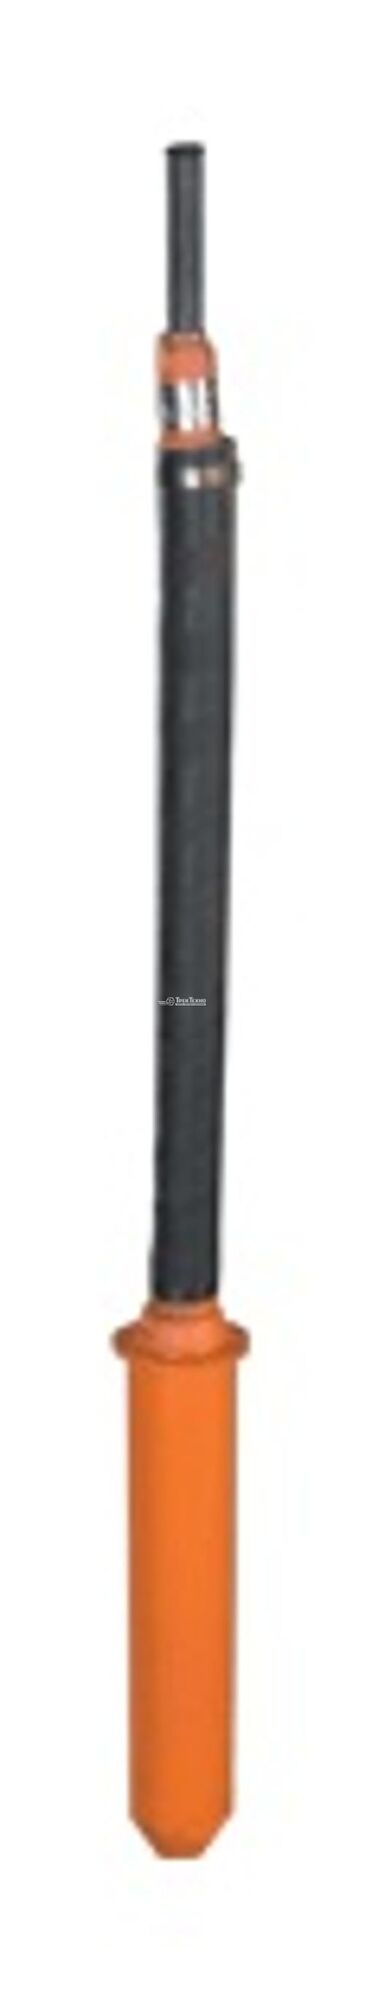 Вибратор глубинный ИВ-95А 127 В, 200 Гц